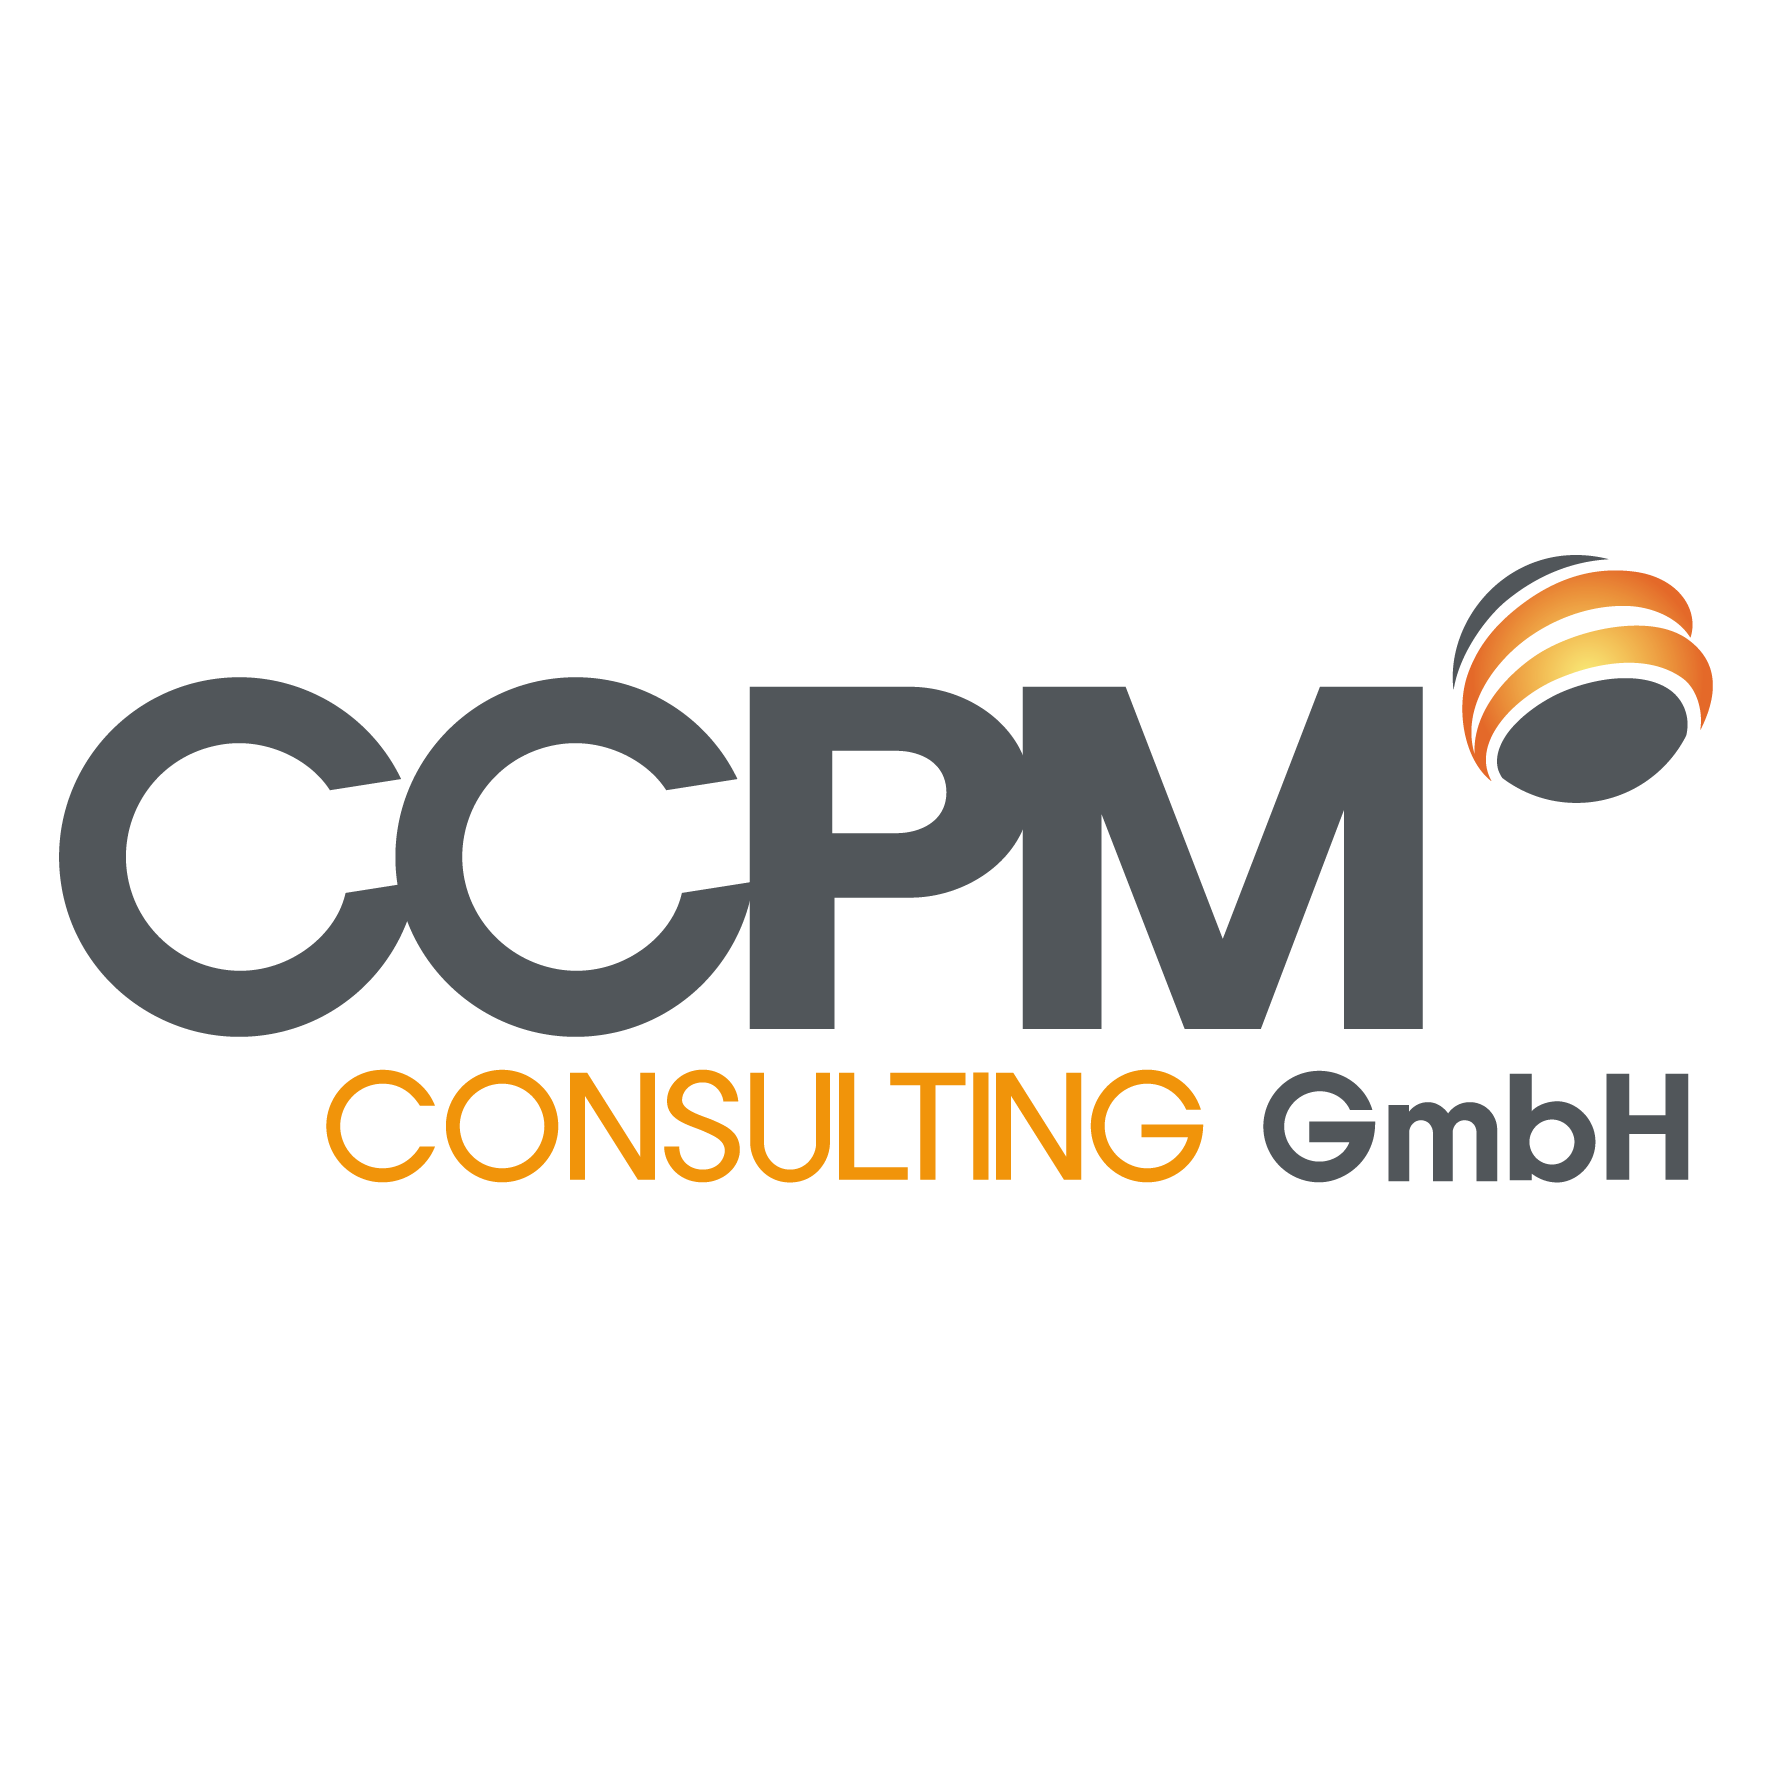 Das CCPM (Critical Chain Project Management) steuert Ihre Multiprojekt-Landschaft so, daß 95% der Projekte pünktlich fertig werden. Viele Unternehmen steigern ihren Projektdurchsatz bei gleicher Belegschaft um 30%, indem sie die Projektlaufzeiten erheblic